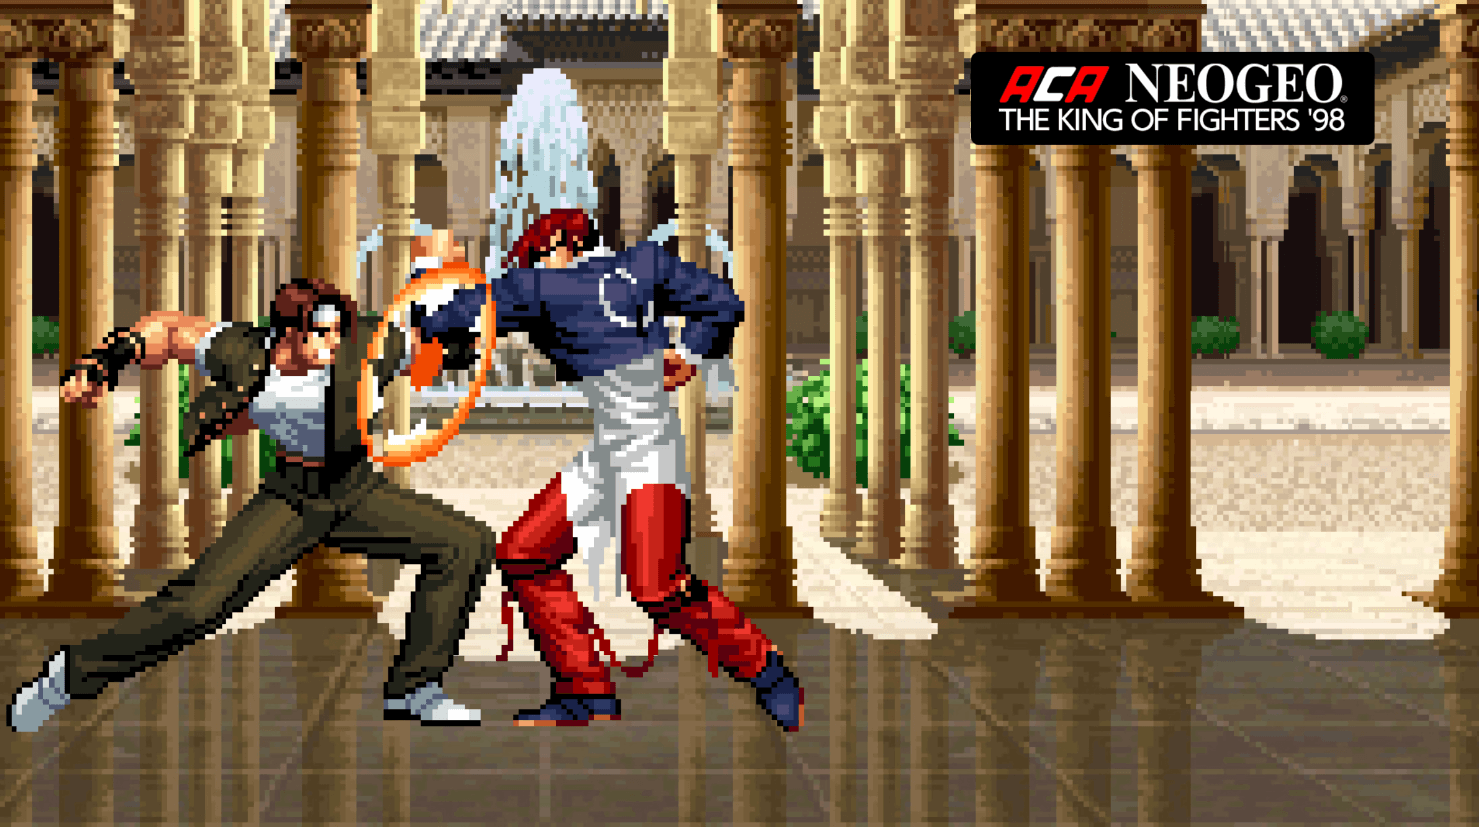 King of Fighters 98. Neo geo игры. Файтинги Neo-geo. Игры для Нинтендо 64 файтинг. Игры 98 года